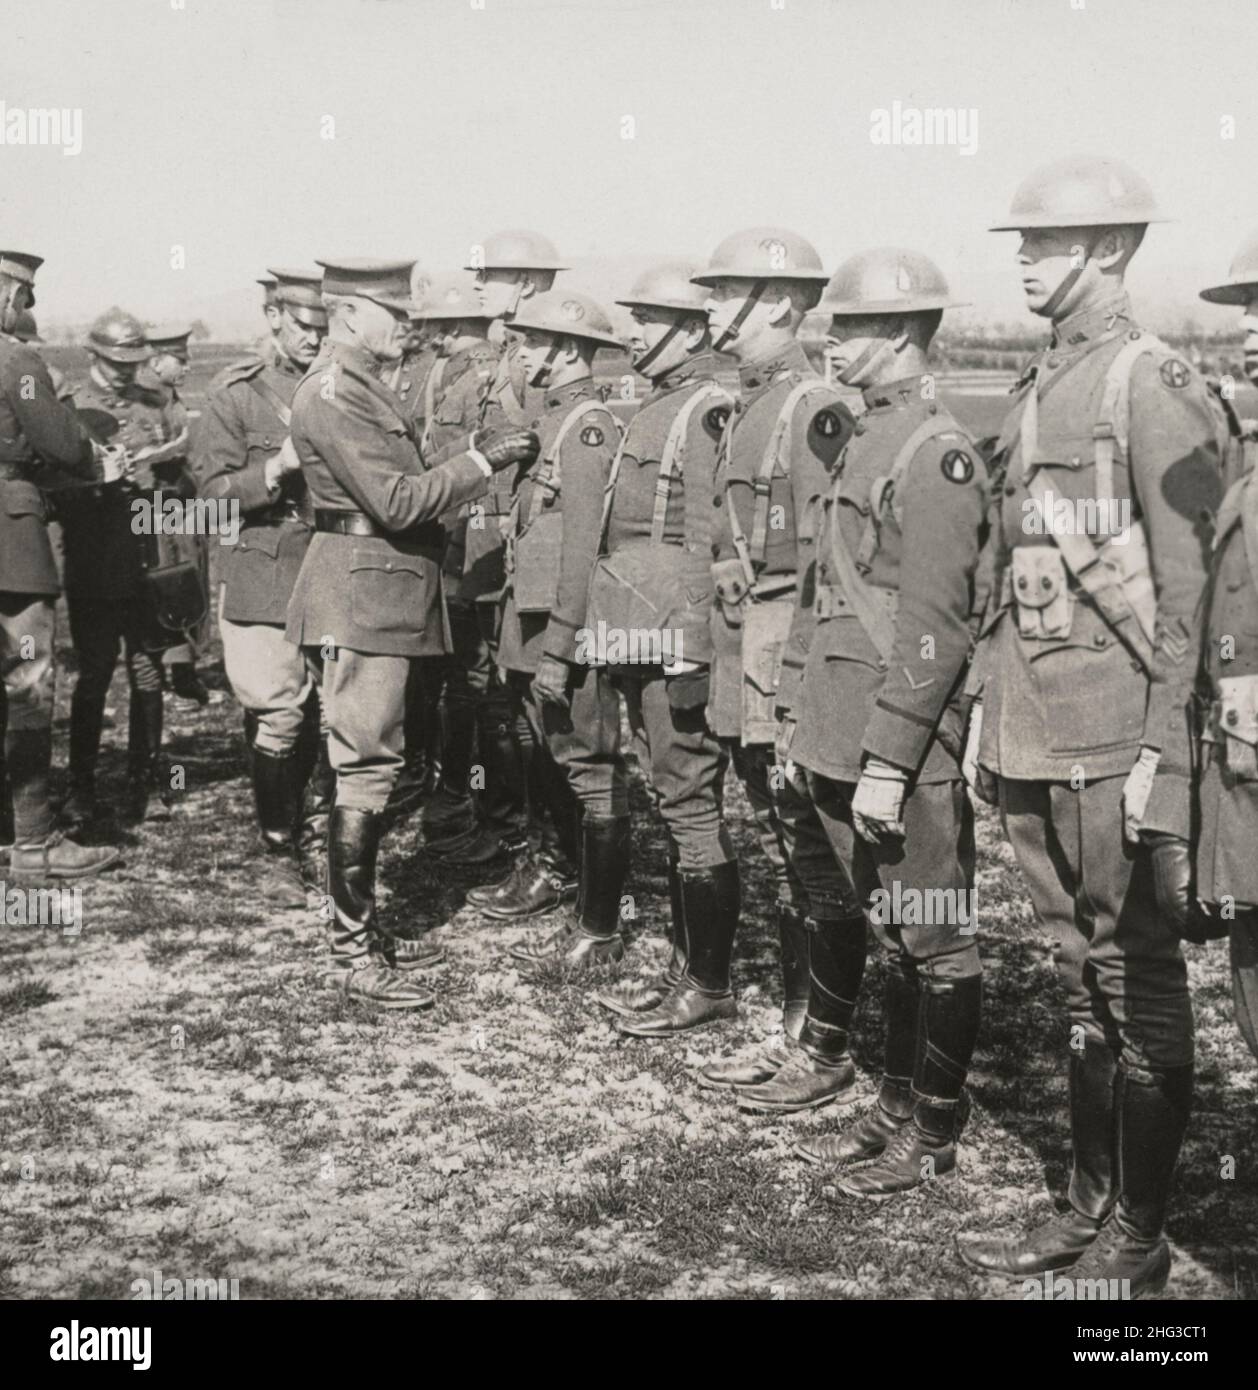 Période de la première Guerre mondiale.Photo d'époque du général Pershing décorateurs officiers de la Division 89th, Treves, Allemagne.1917-1918 Banque D'Images